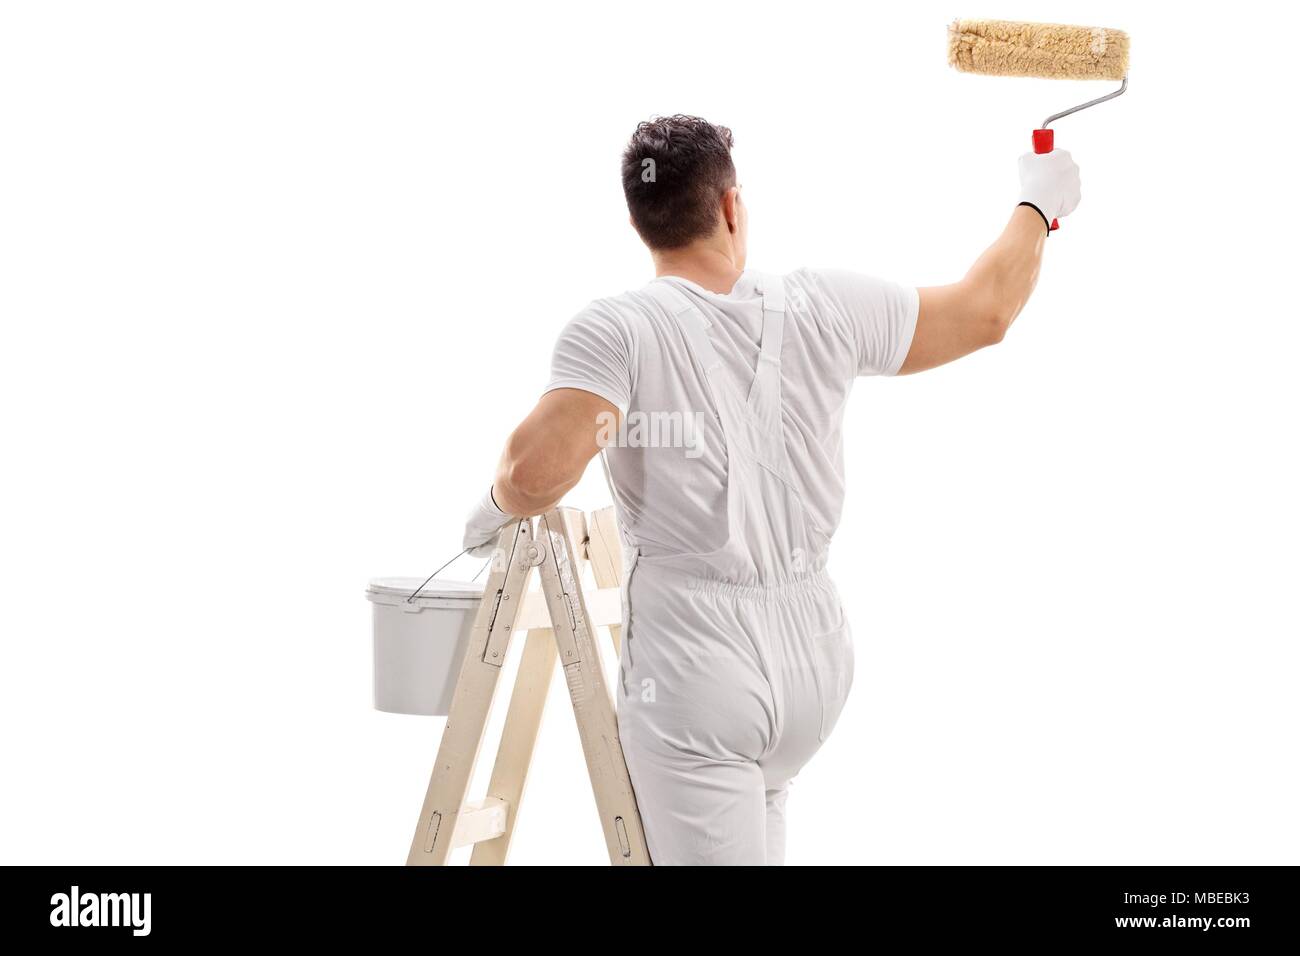 Ansicht von hinten erschossen von einem Maler kletterte auf eine Leiter Malerei mit einer Rolle auf weißem Hintergrund Stockfoto